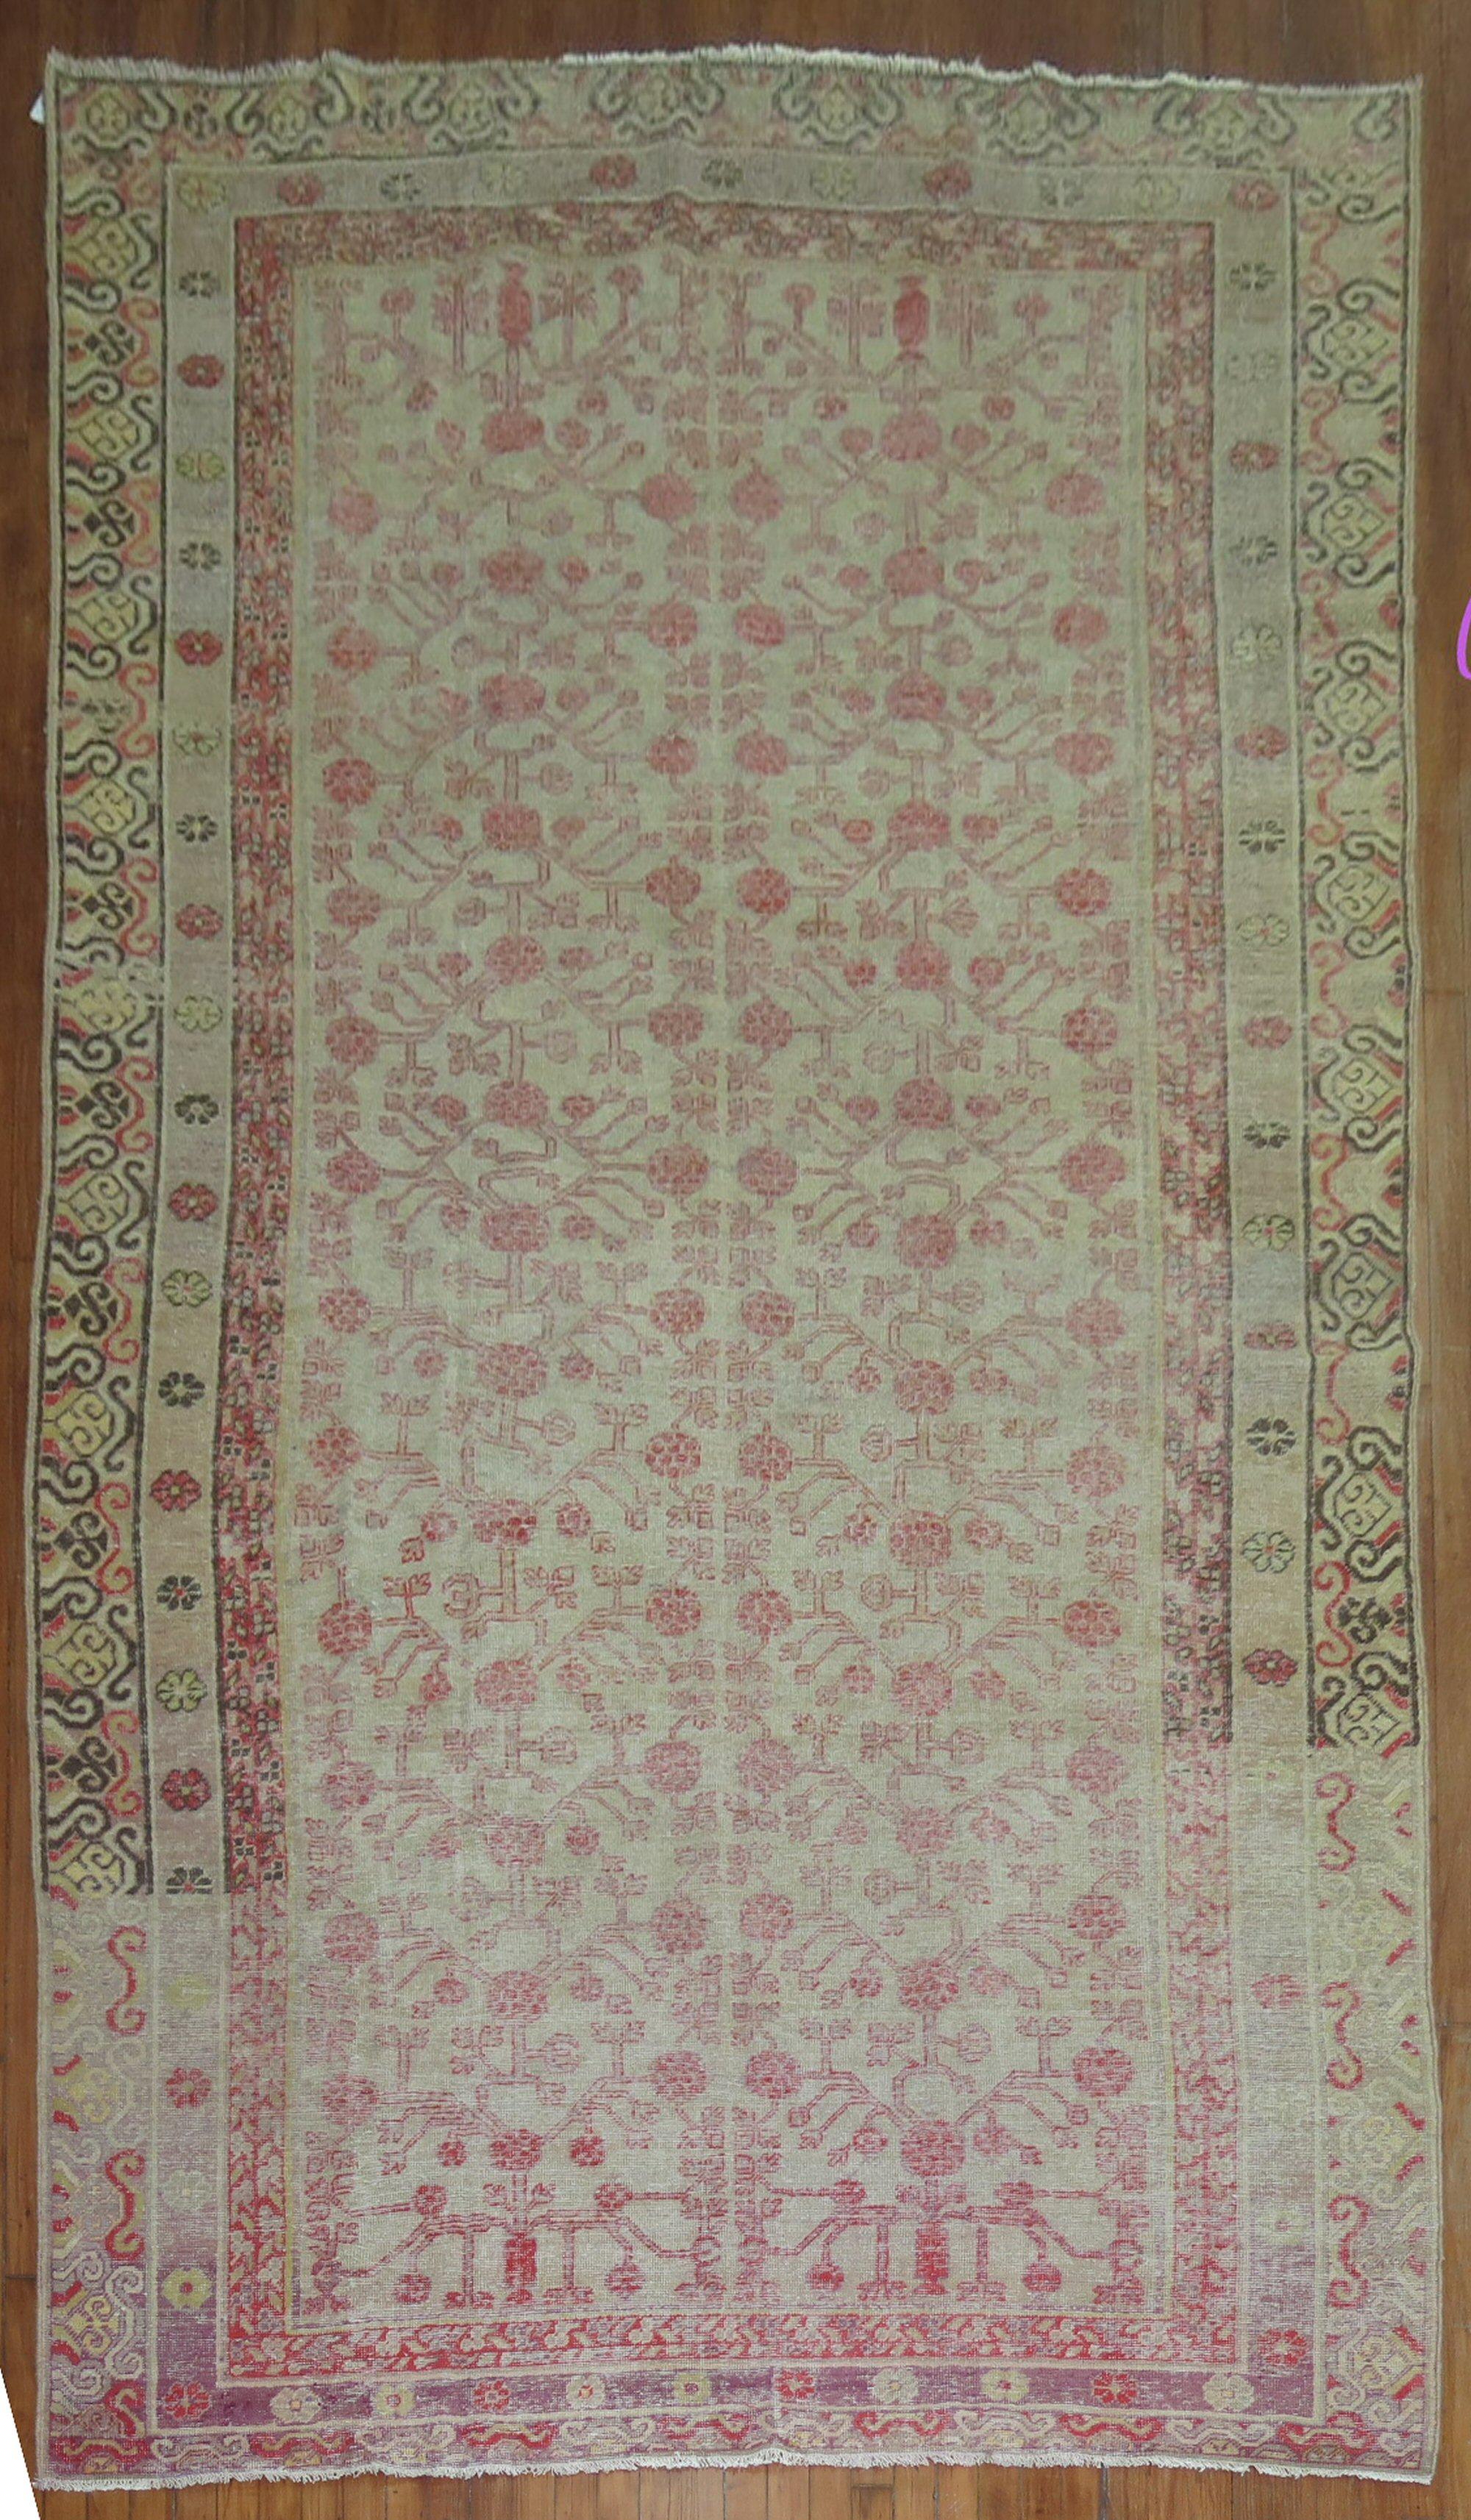 Abgenutzter Khotan-Teppich in Galeriegröße aus dem 19. Jahrhundert mit Granatapfelmuster.

Maße: 6'4'' x 13'2''.